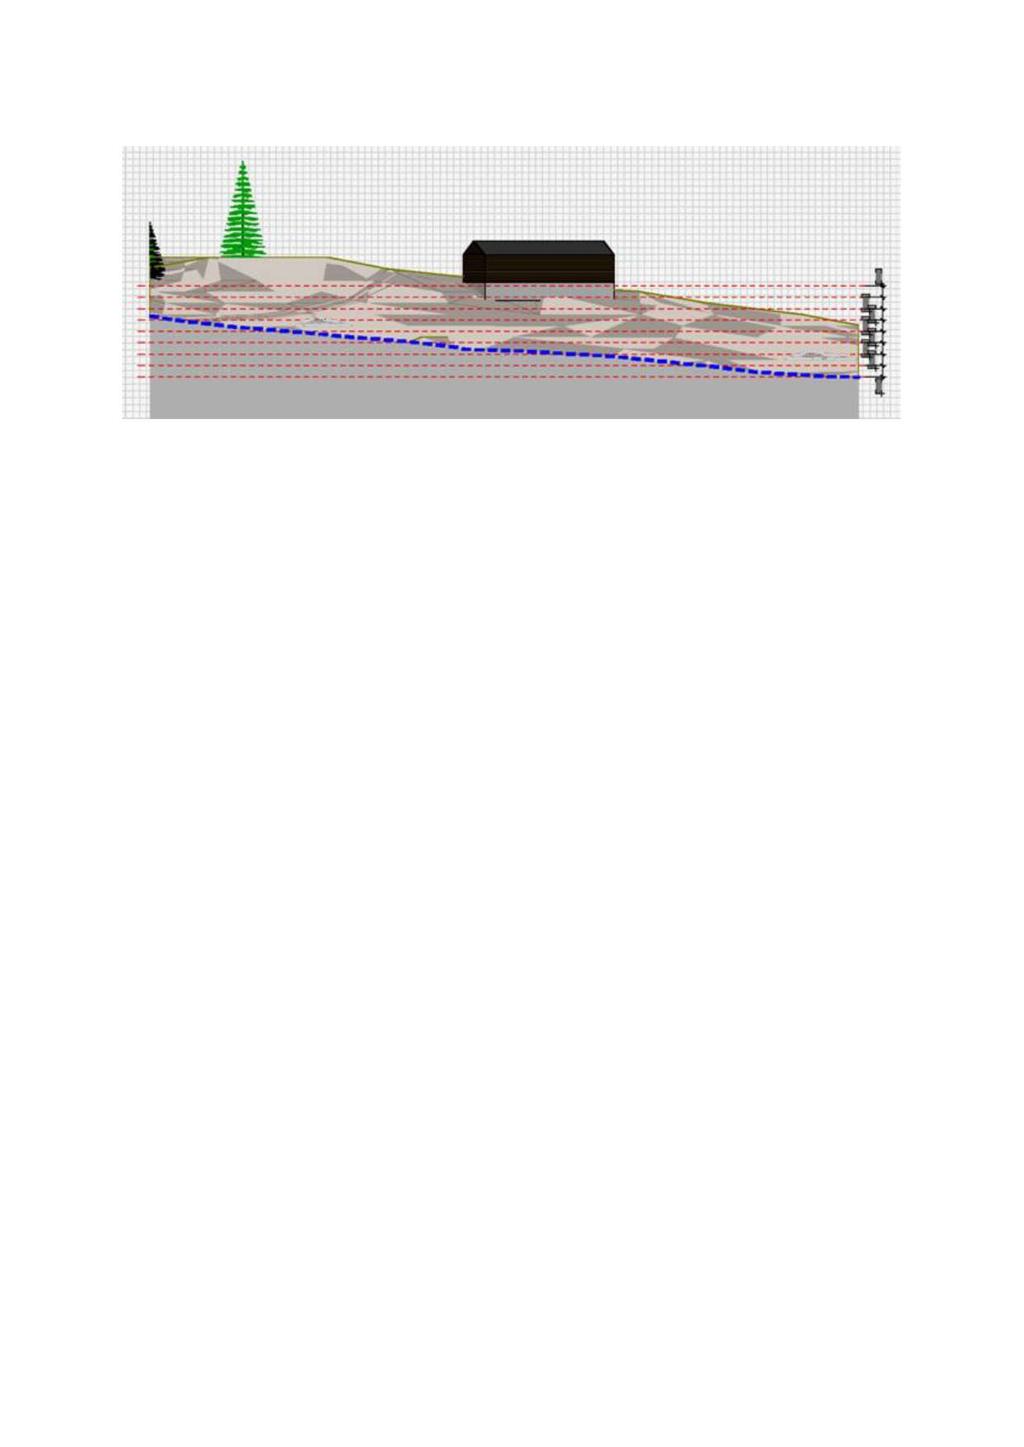 Side 12 av 12 Figur 9 : Lengdeprofil (62 m lang) langs bekken (blå linje, terreng fig 7) med 1 m høydekoter (røde stiplede linjer). Bekken er vist med blått.